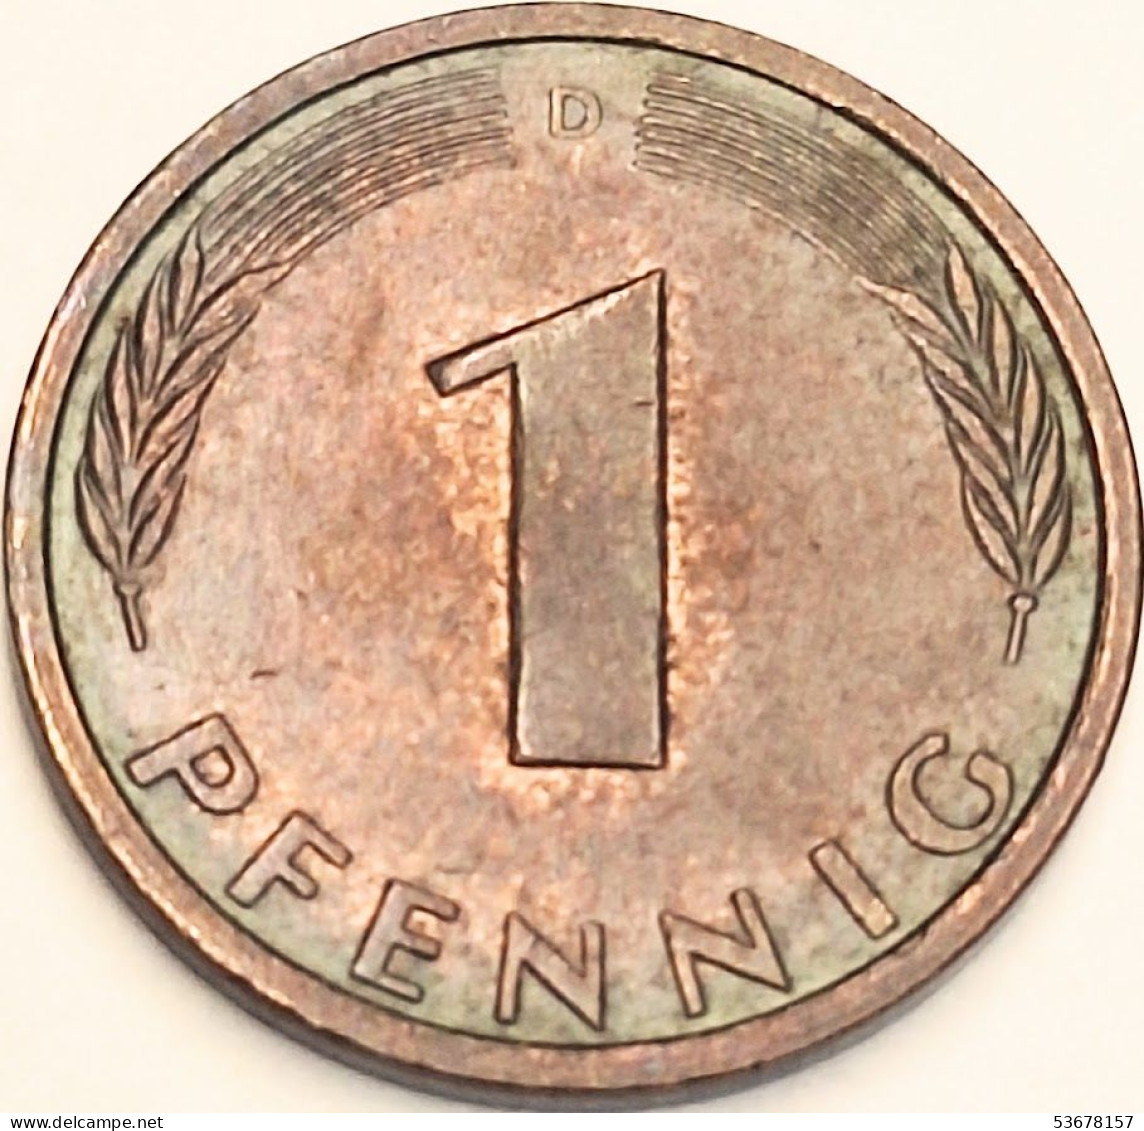 Germany Federal Republic - Pfennig 1981 D, KM# 105 (#4483) - 1 Pfennig